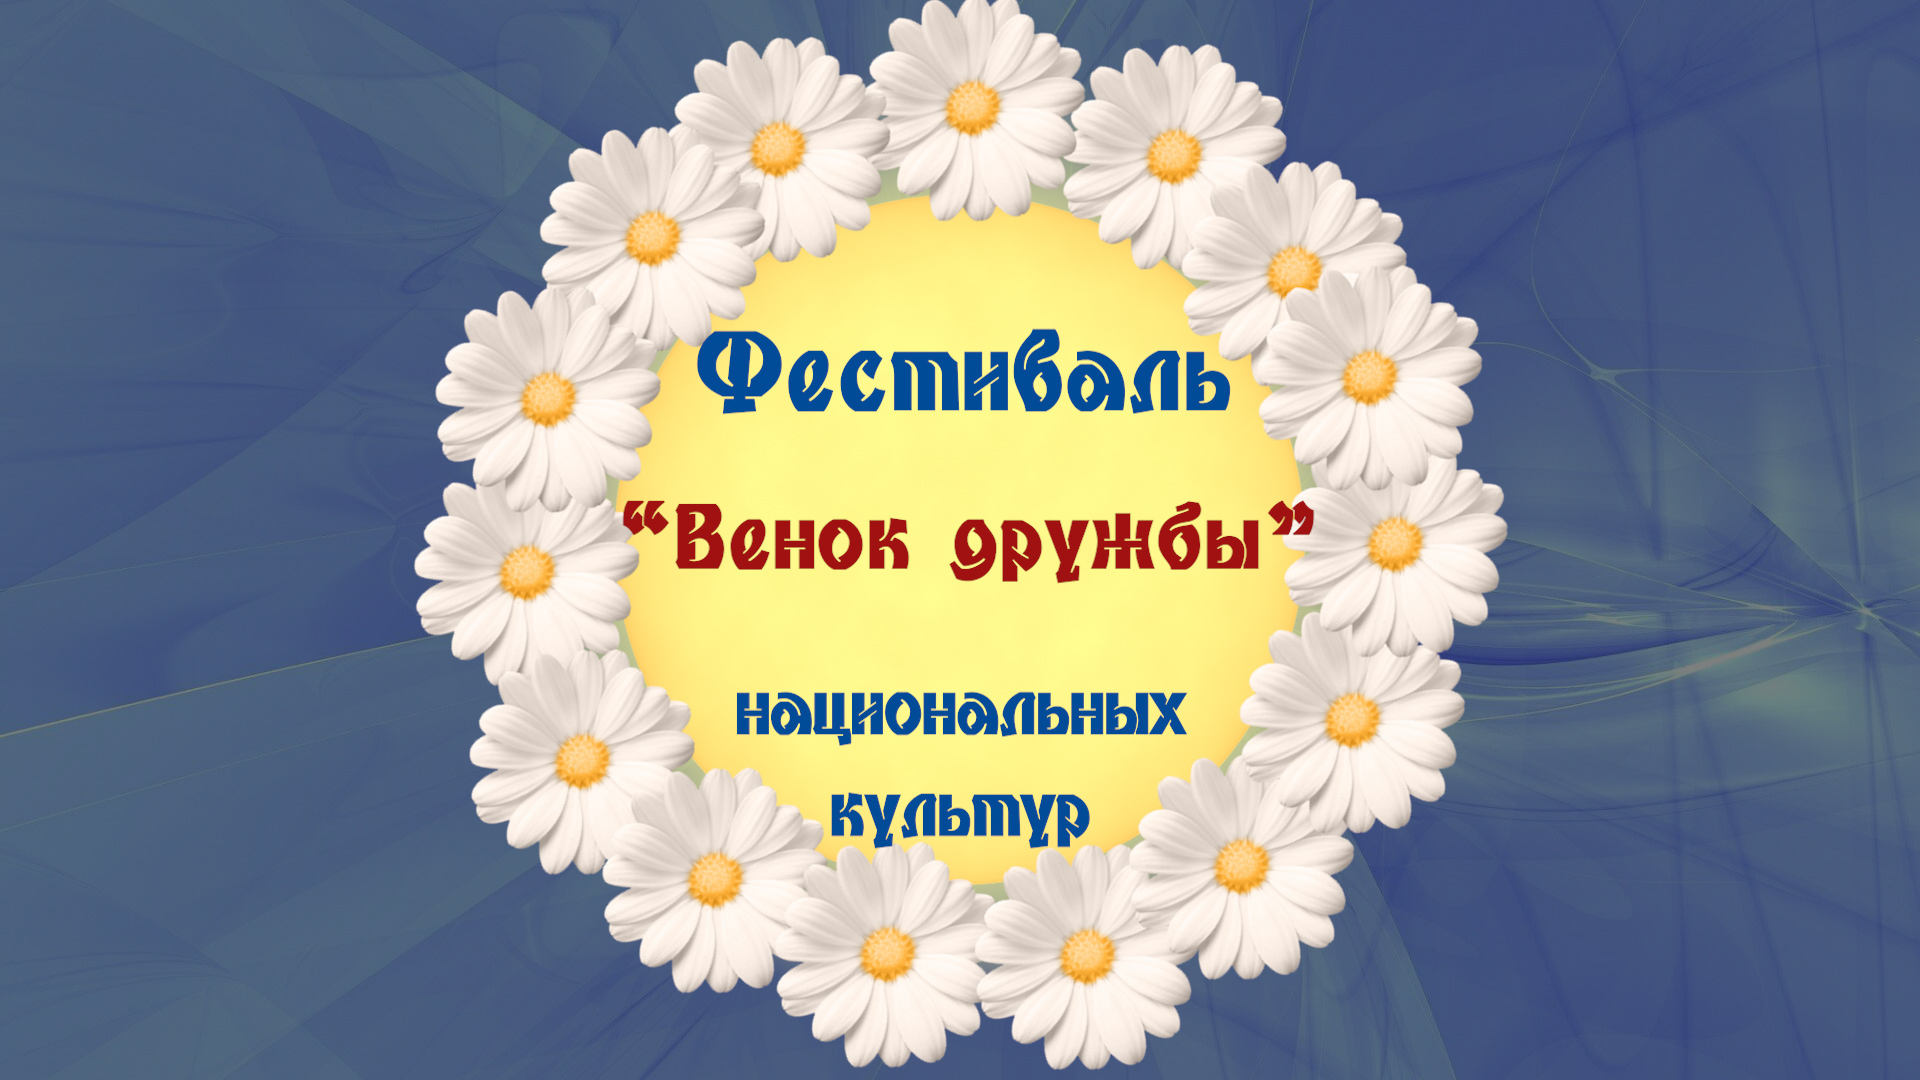 You are currently viewing Апанасенковский окружной онлайн-фестиваль национальных культур «Венок дружбы»